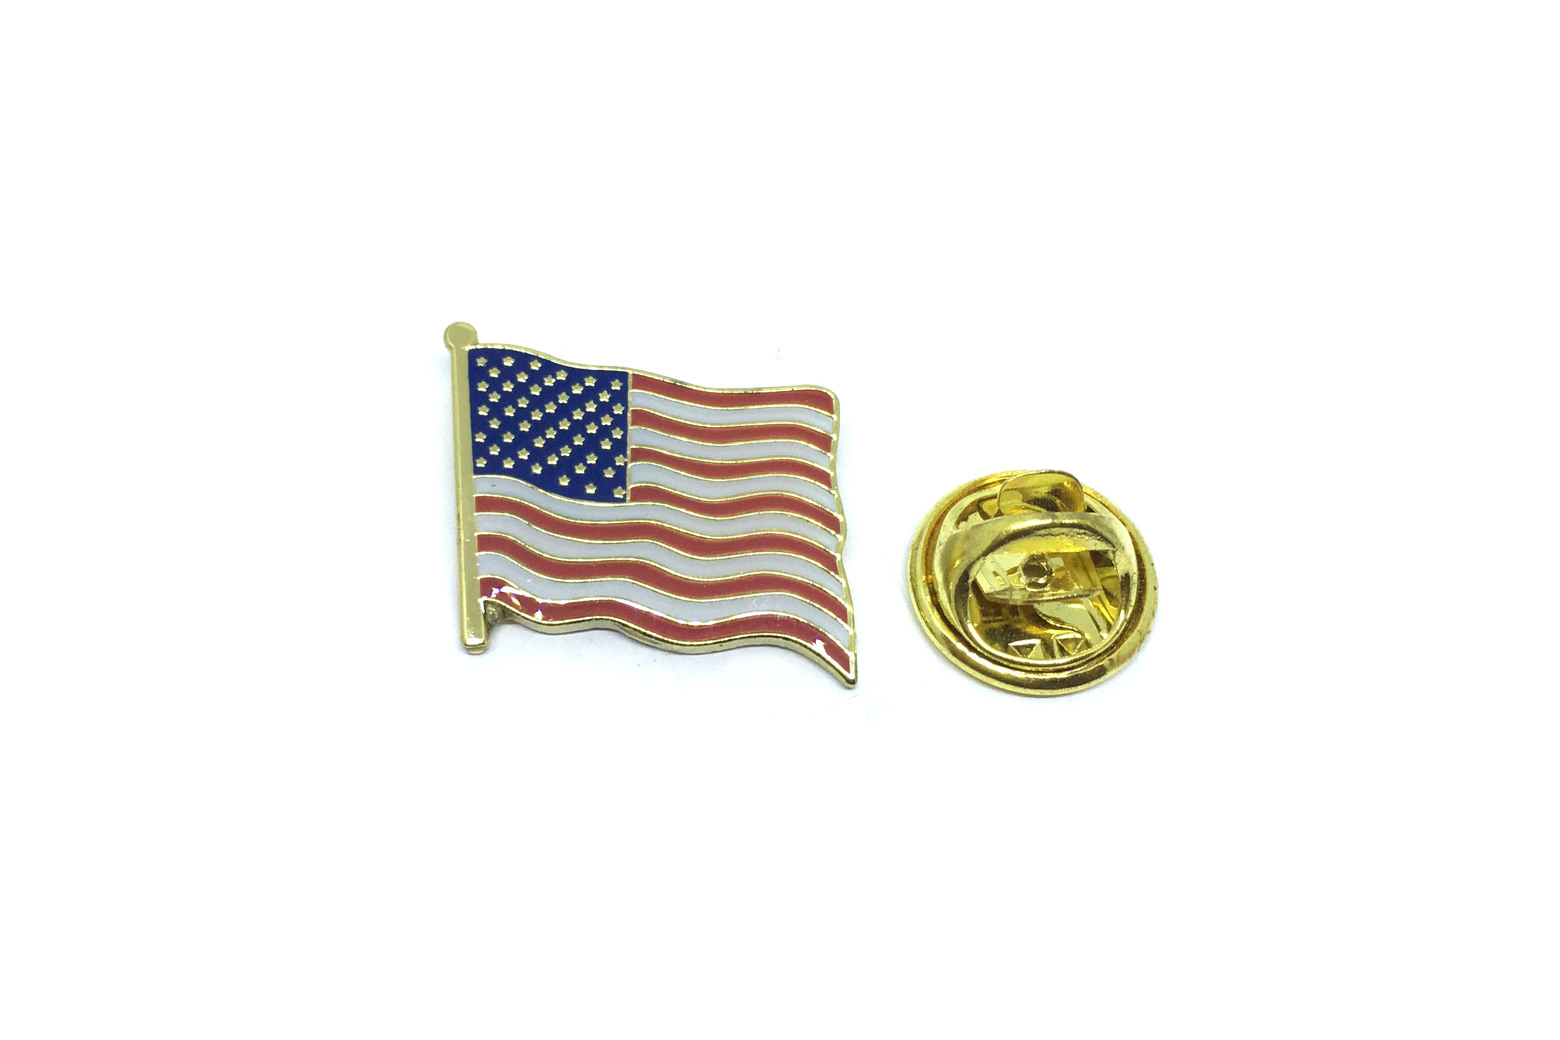 Patriotic American Flag Pin